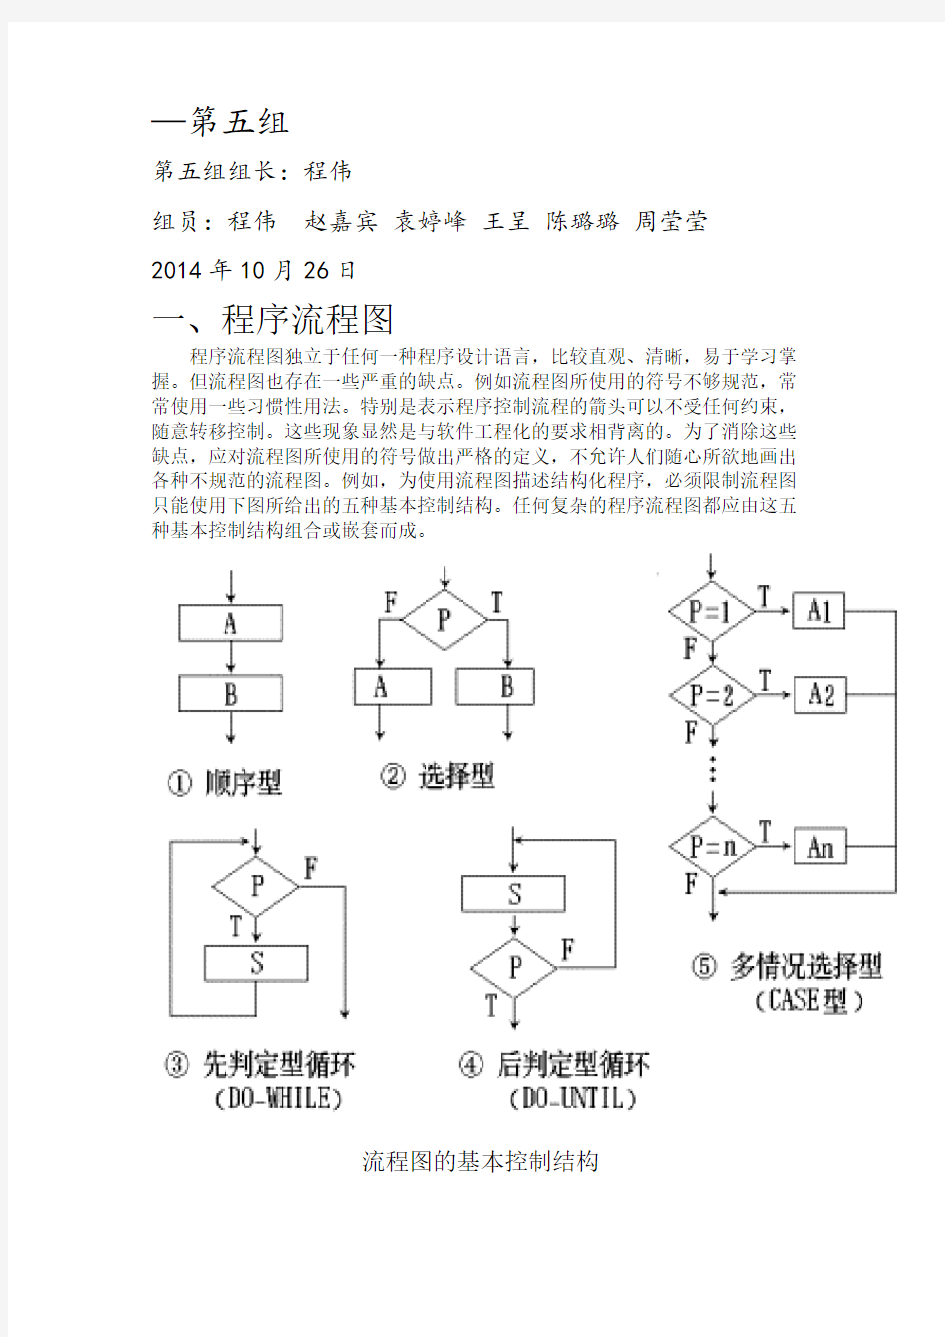 程序流程图-盒图-PAD图(最终)教学提纲